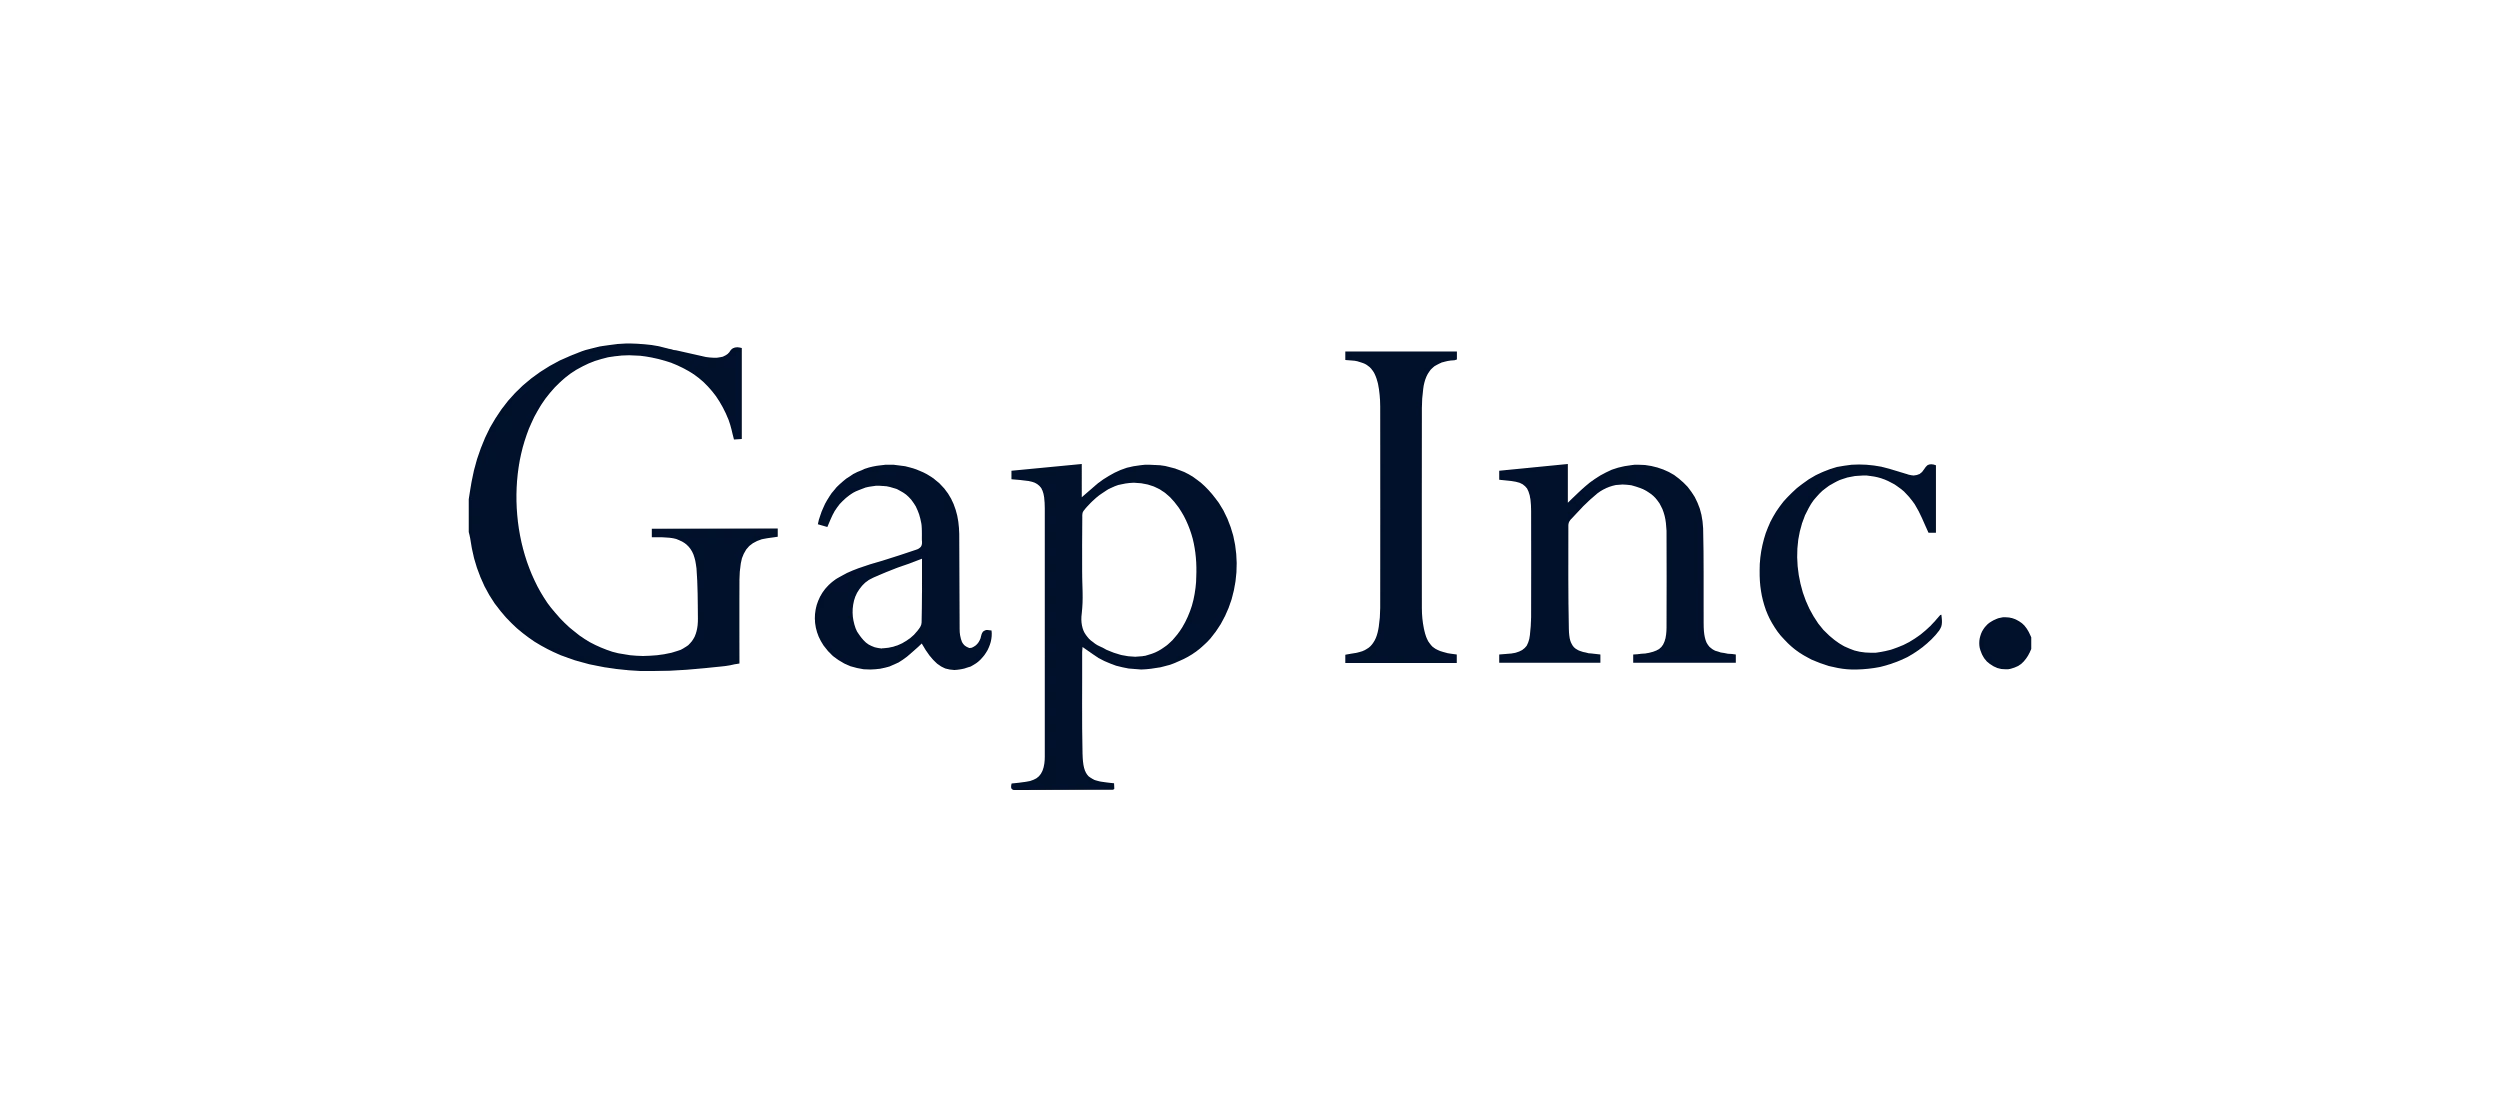 Gap inc logo